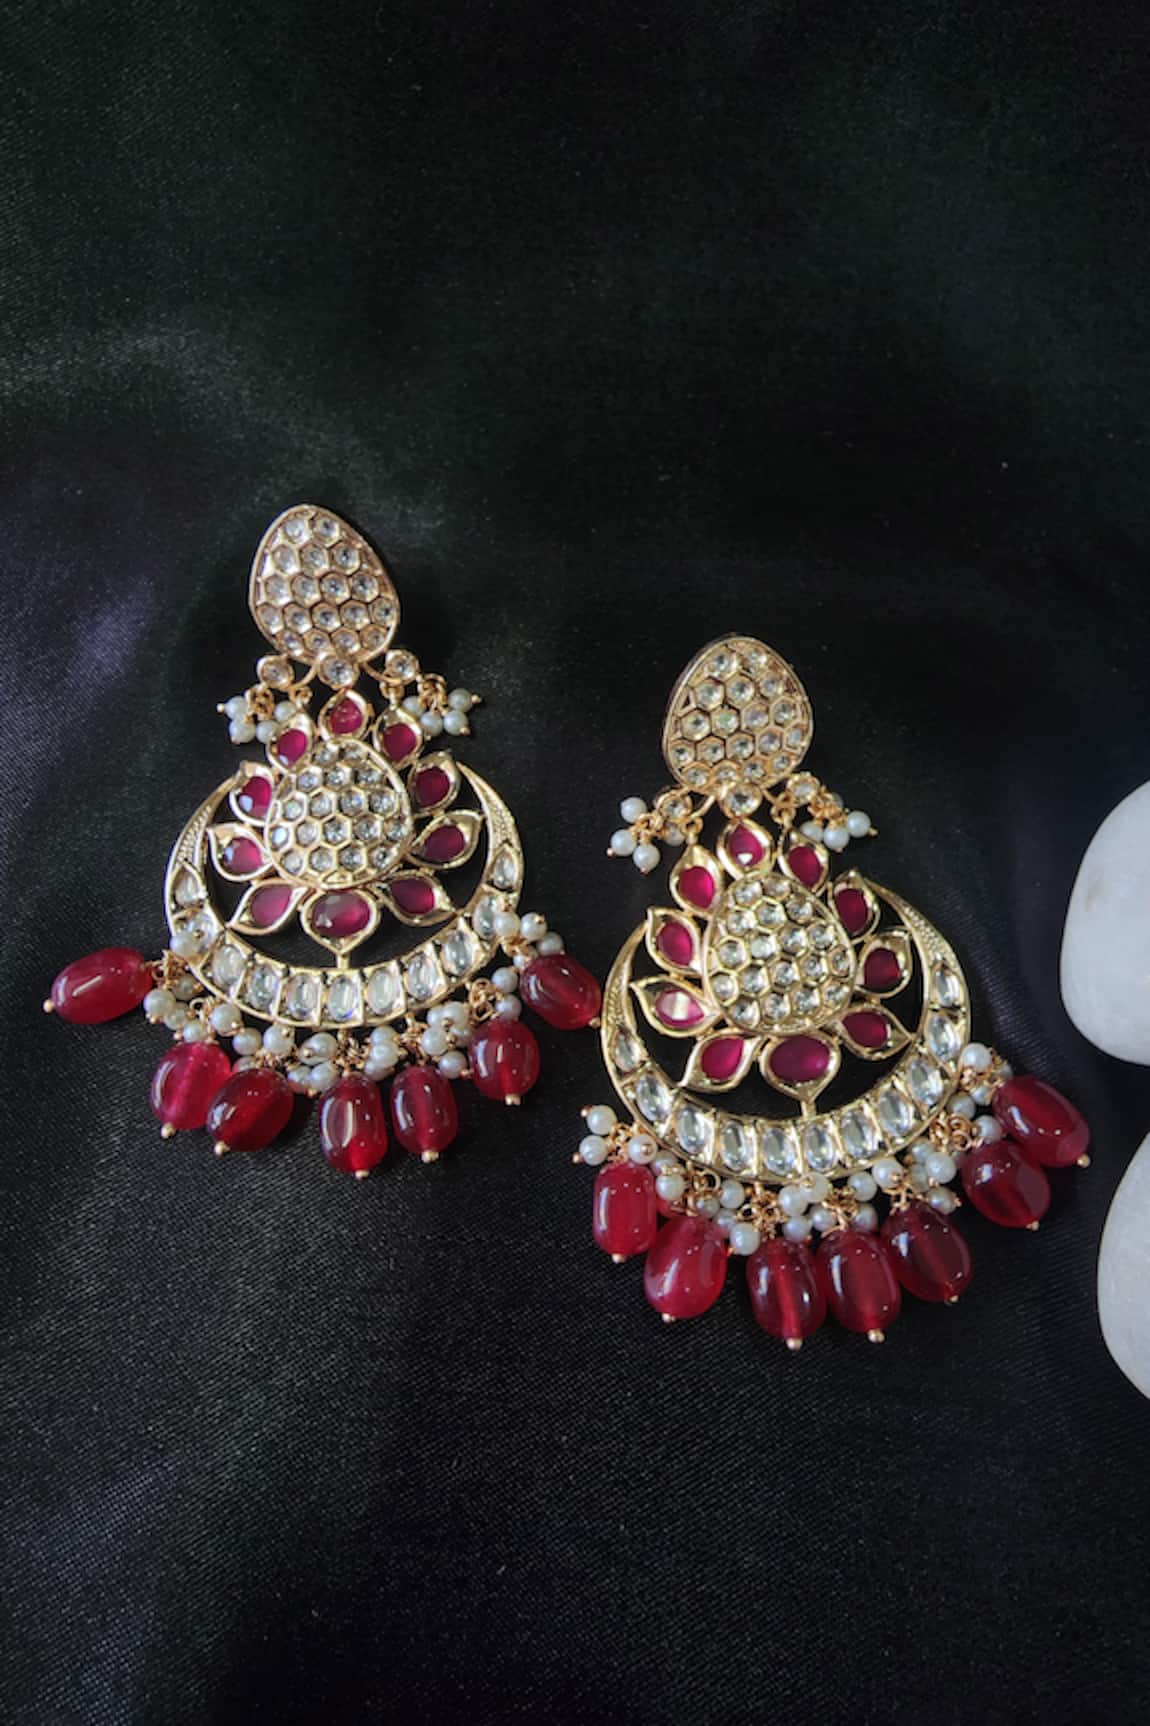 The Bling Girll Ornate Stone Studded Chandbali Earrings